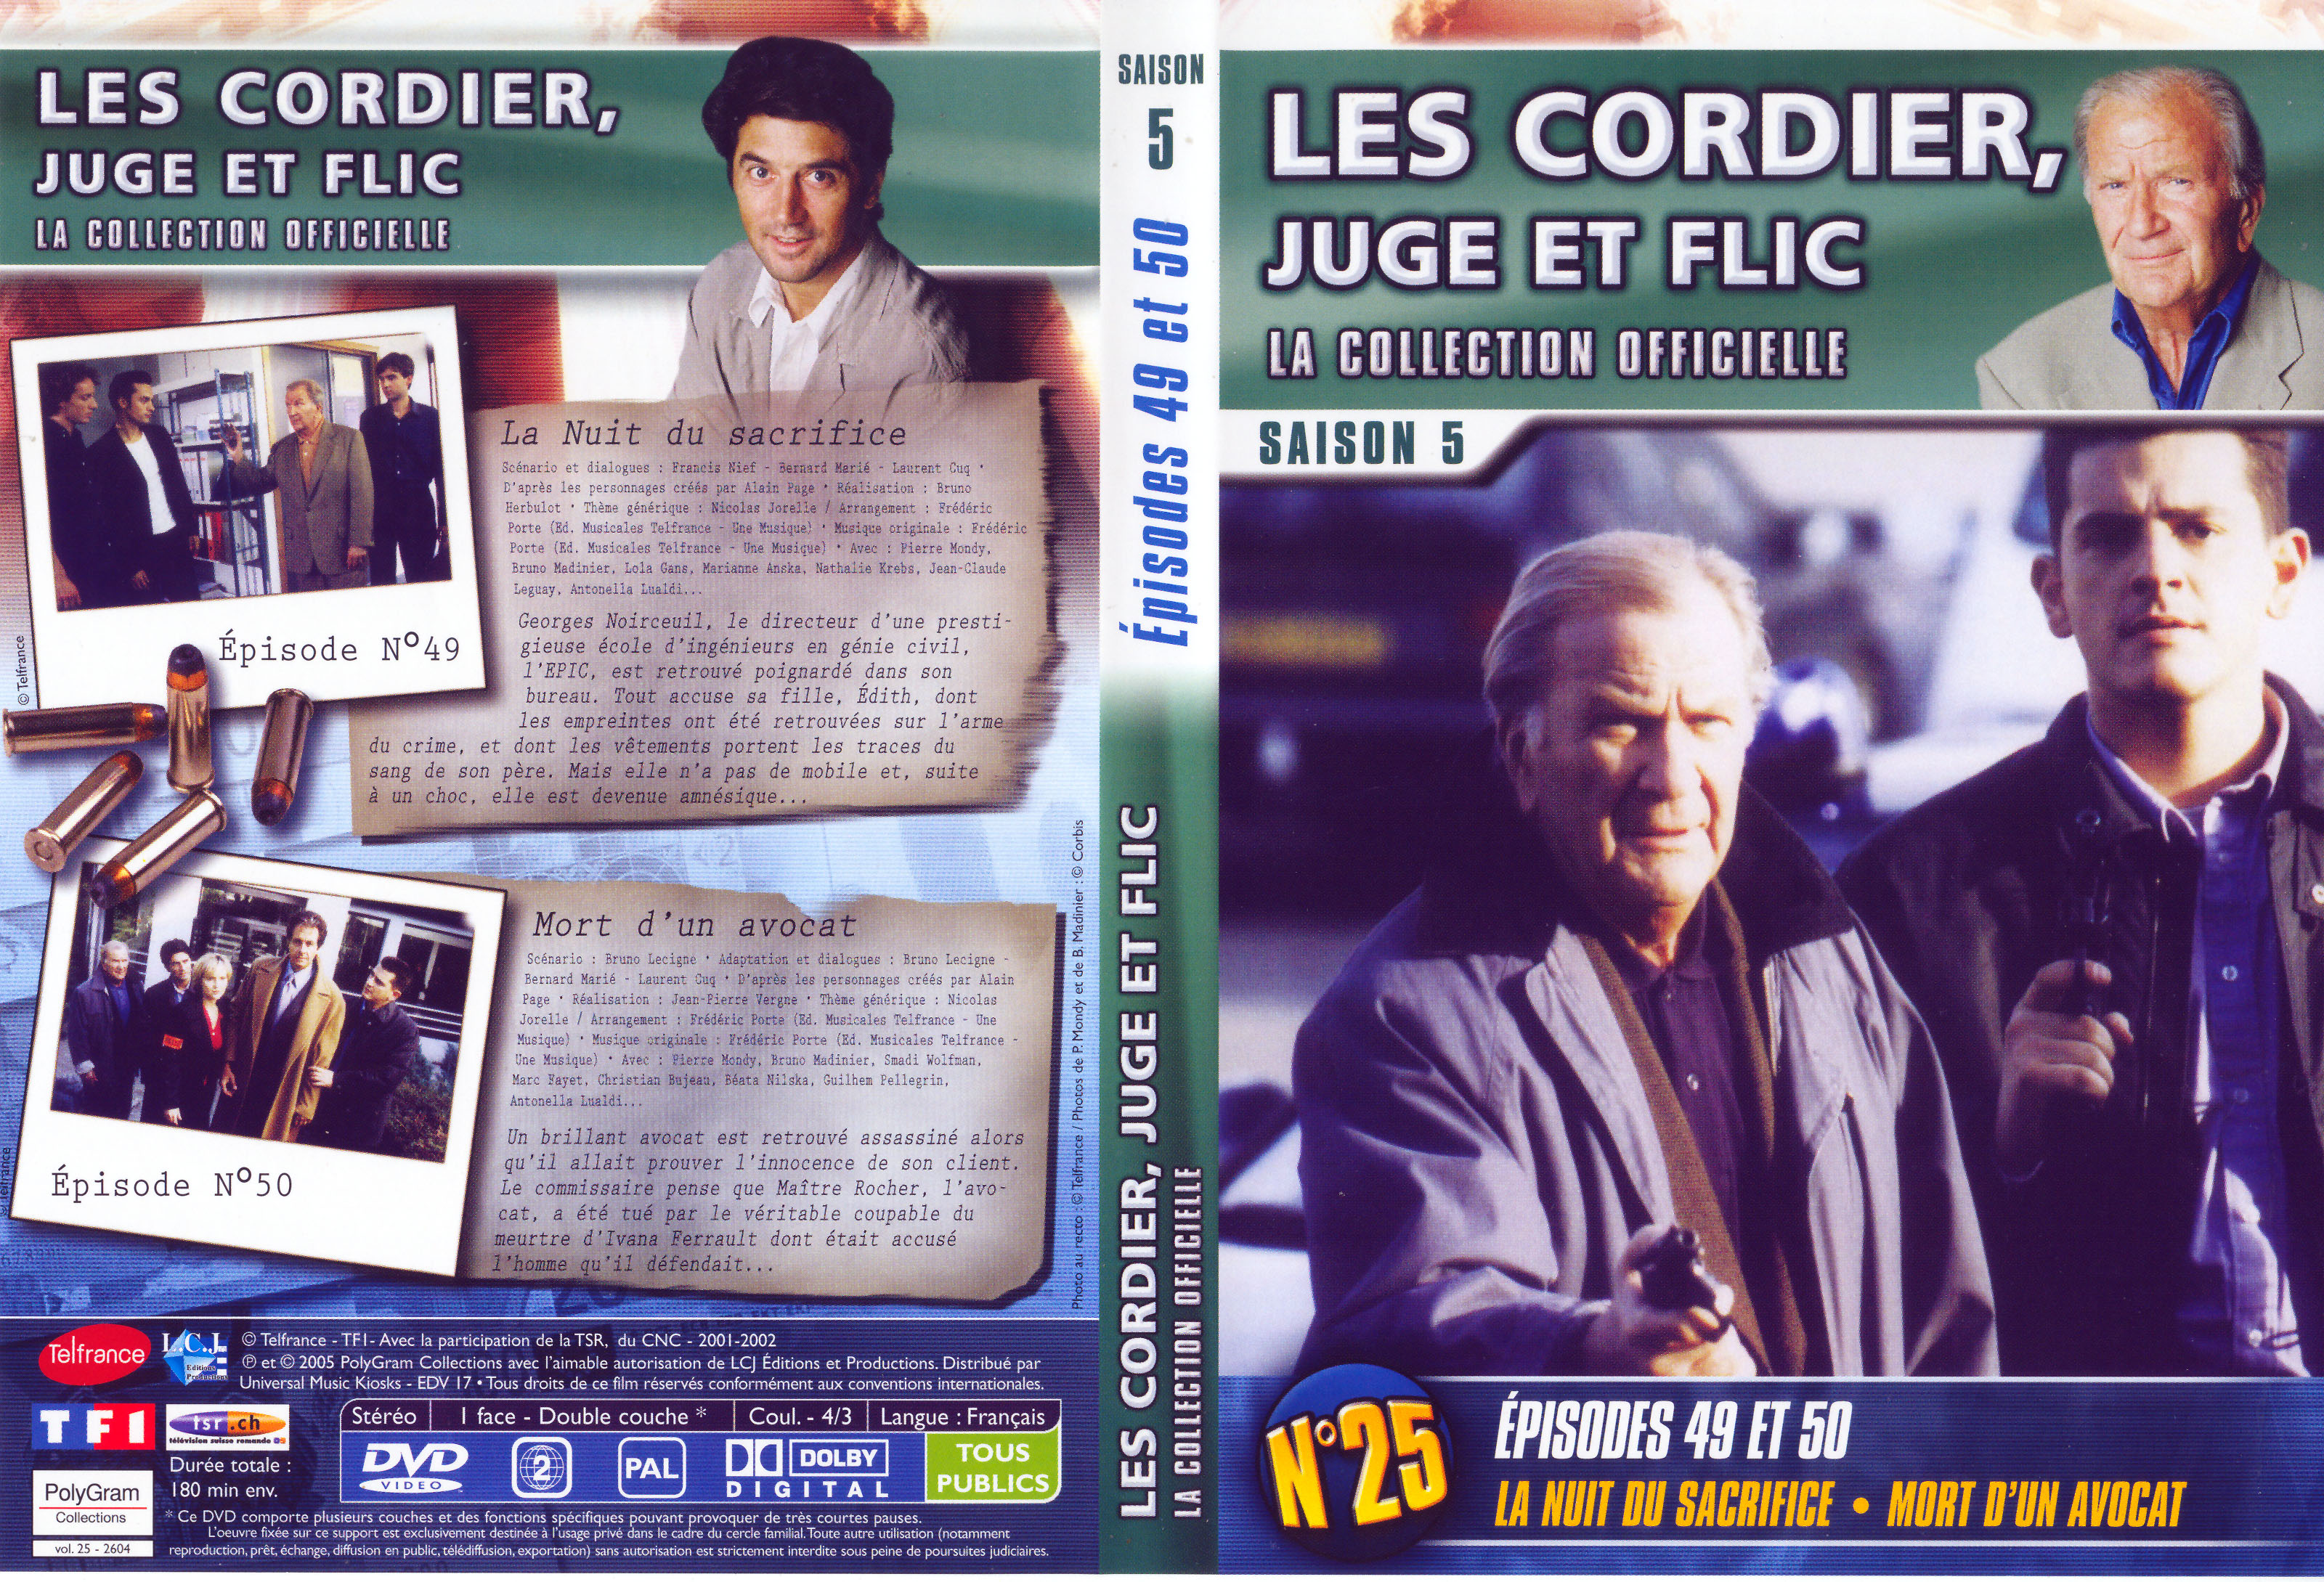 Jaquette DVD Les cordier juge et flic Saison 5 vol 25